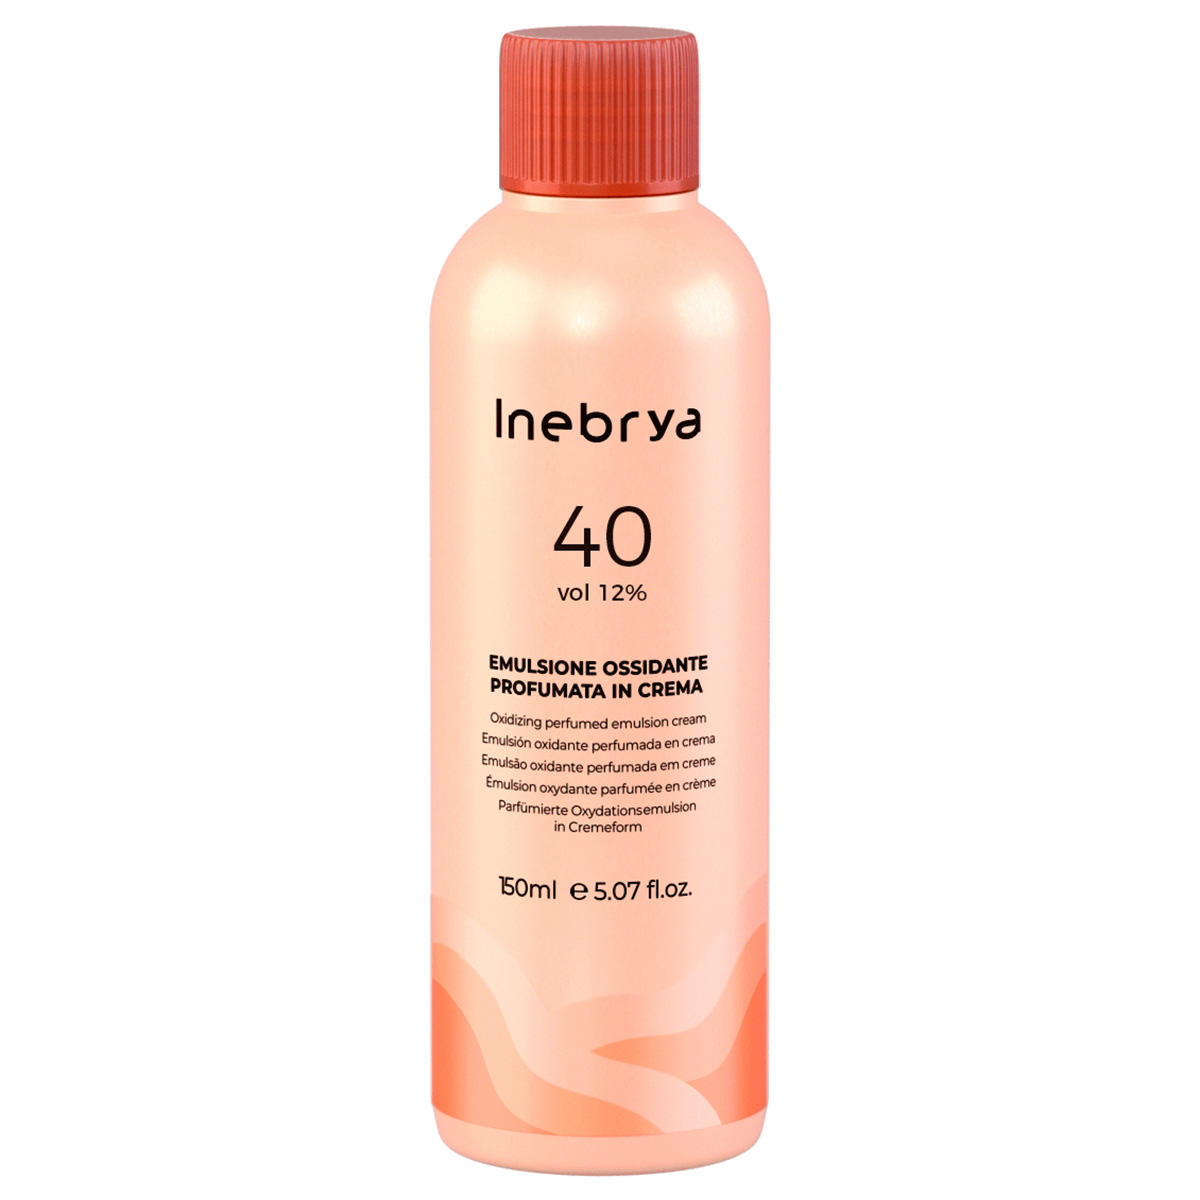 Inebrya Creme Oxyd Volume 40 12%, 150 ml